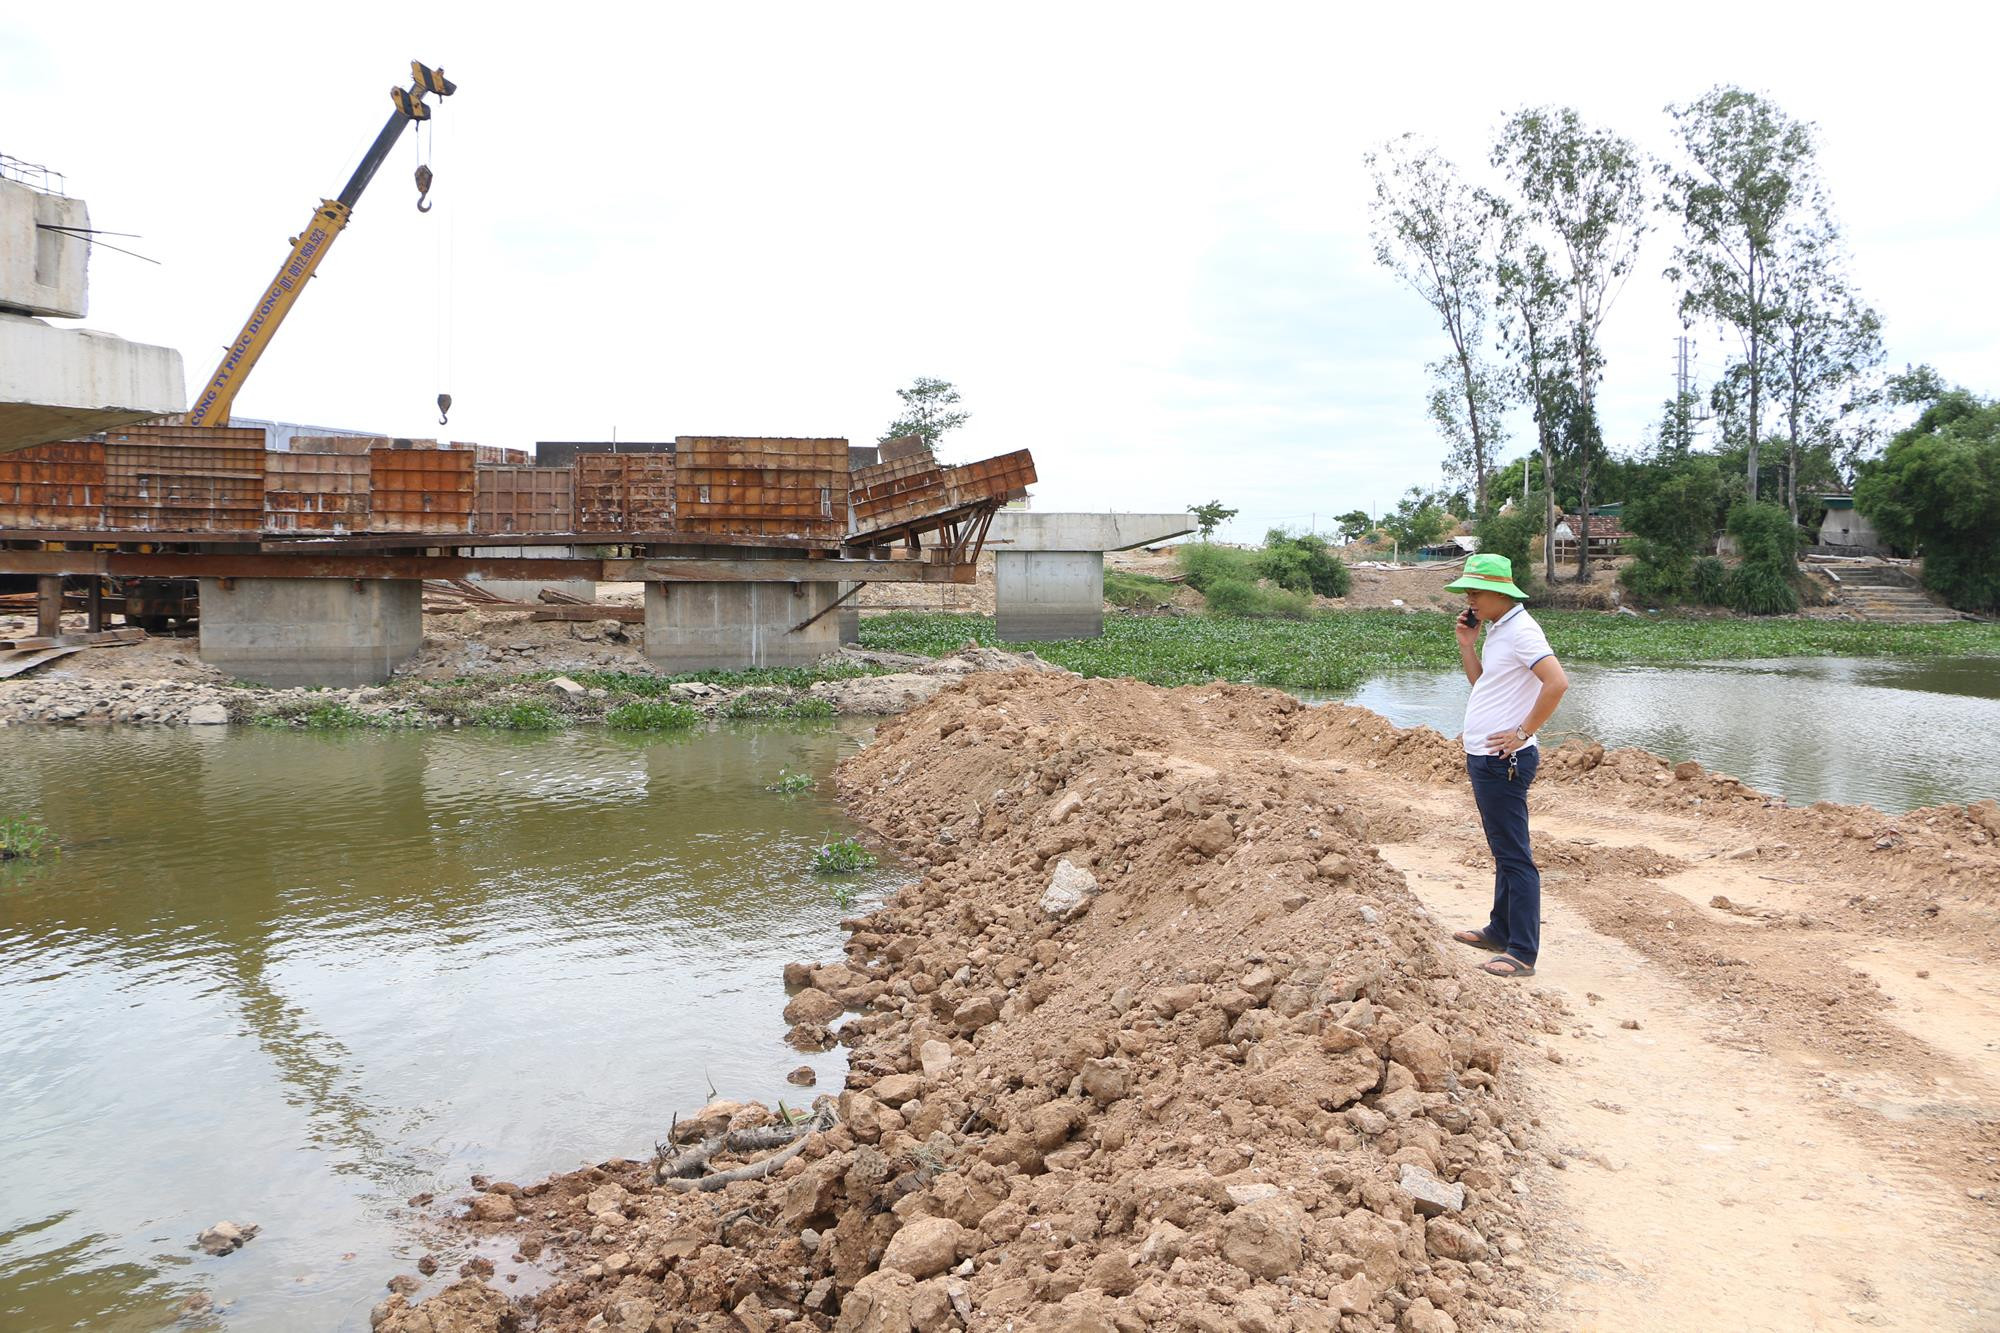 Đê quai tạm thời ngăn nước mặn tại cống qua cầu N5, xóm 11 xã Nghi Thuận. Dù bị người dân có ý kiến phản ứng nhưng đây là giải pháp cấp bách và tối ưu nhất. Ảnh: Nguyễn Hải